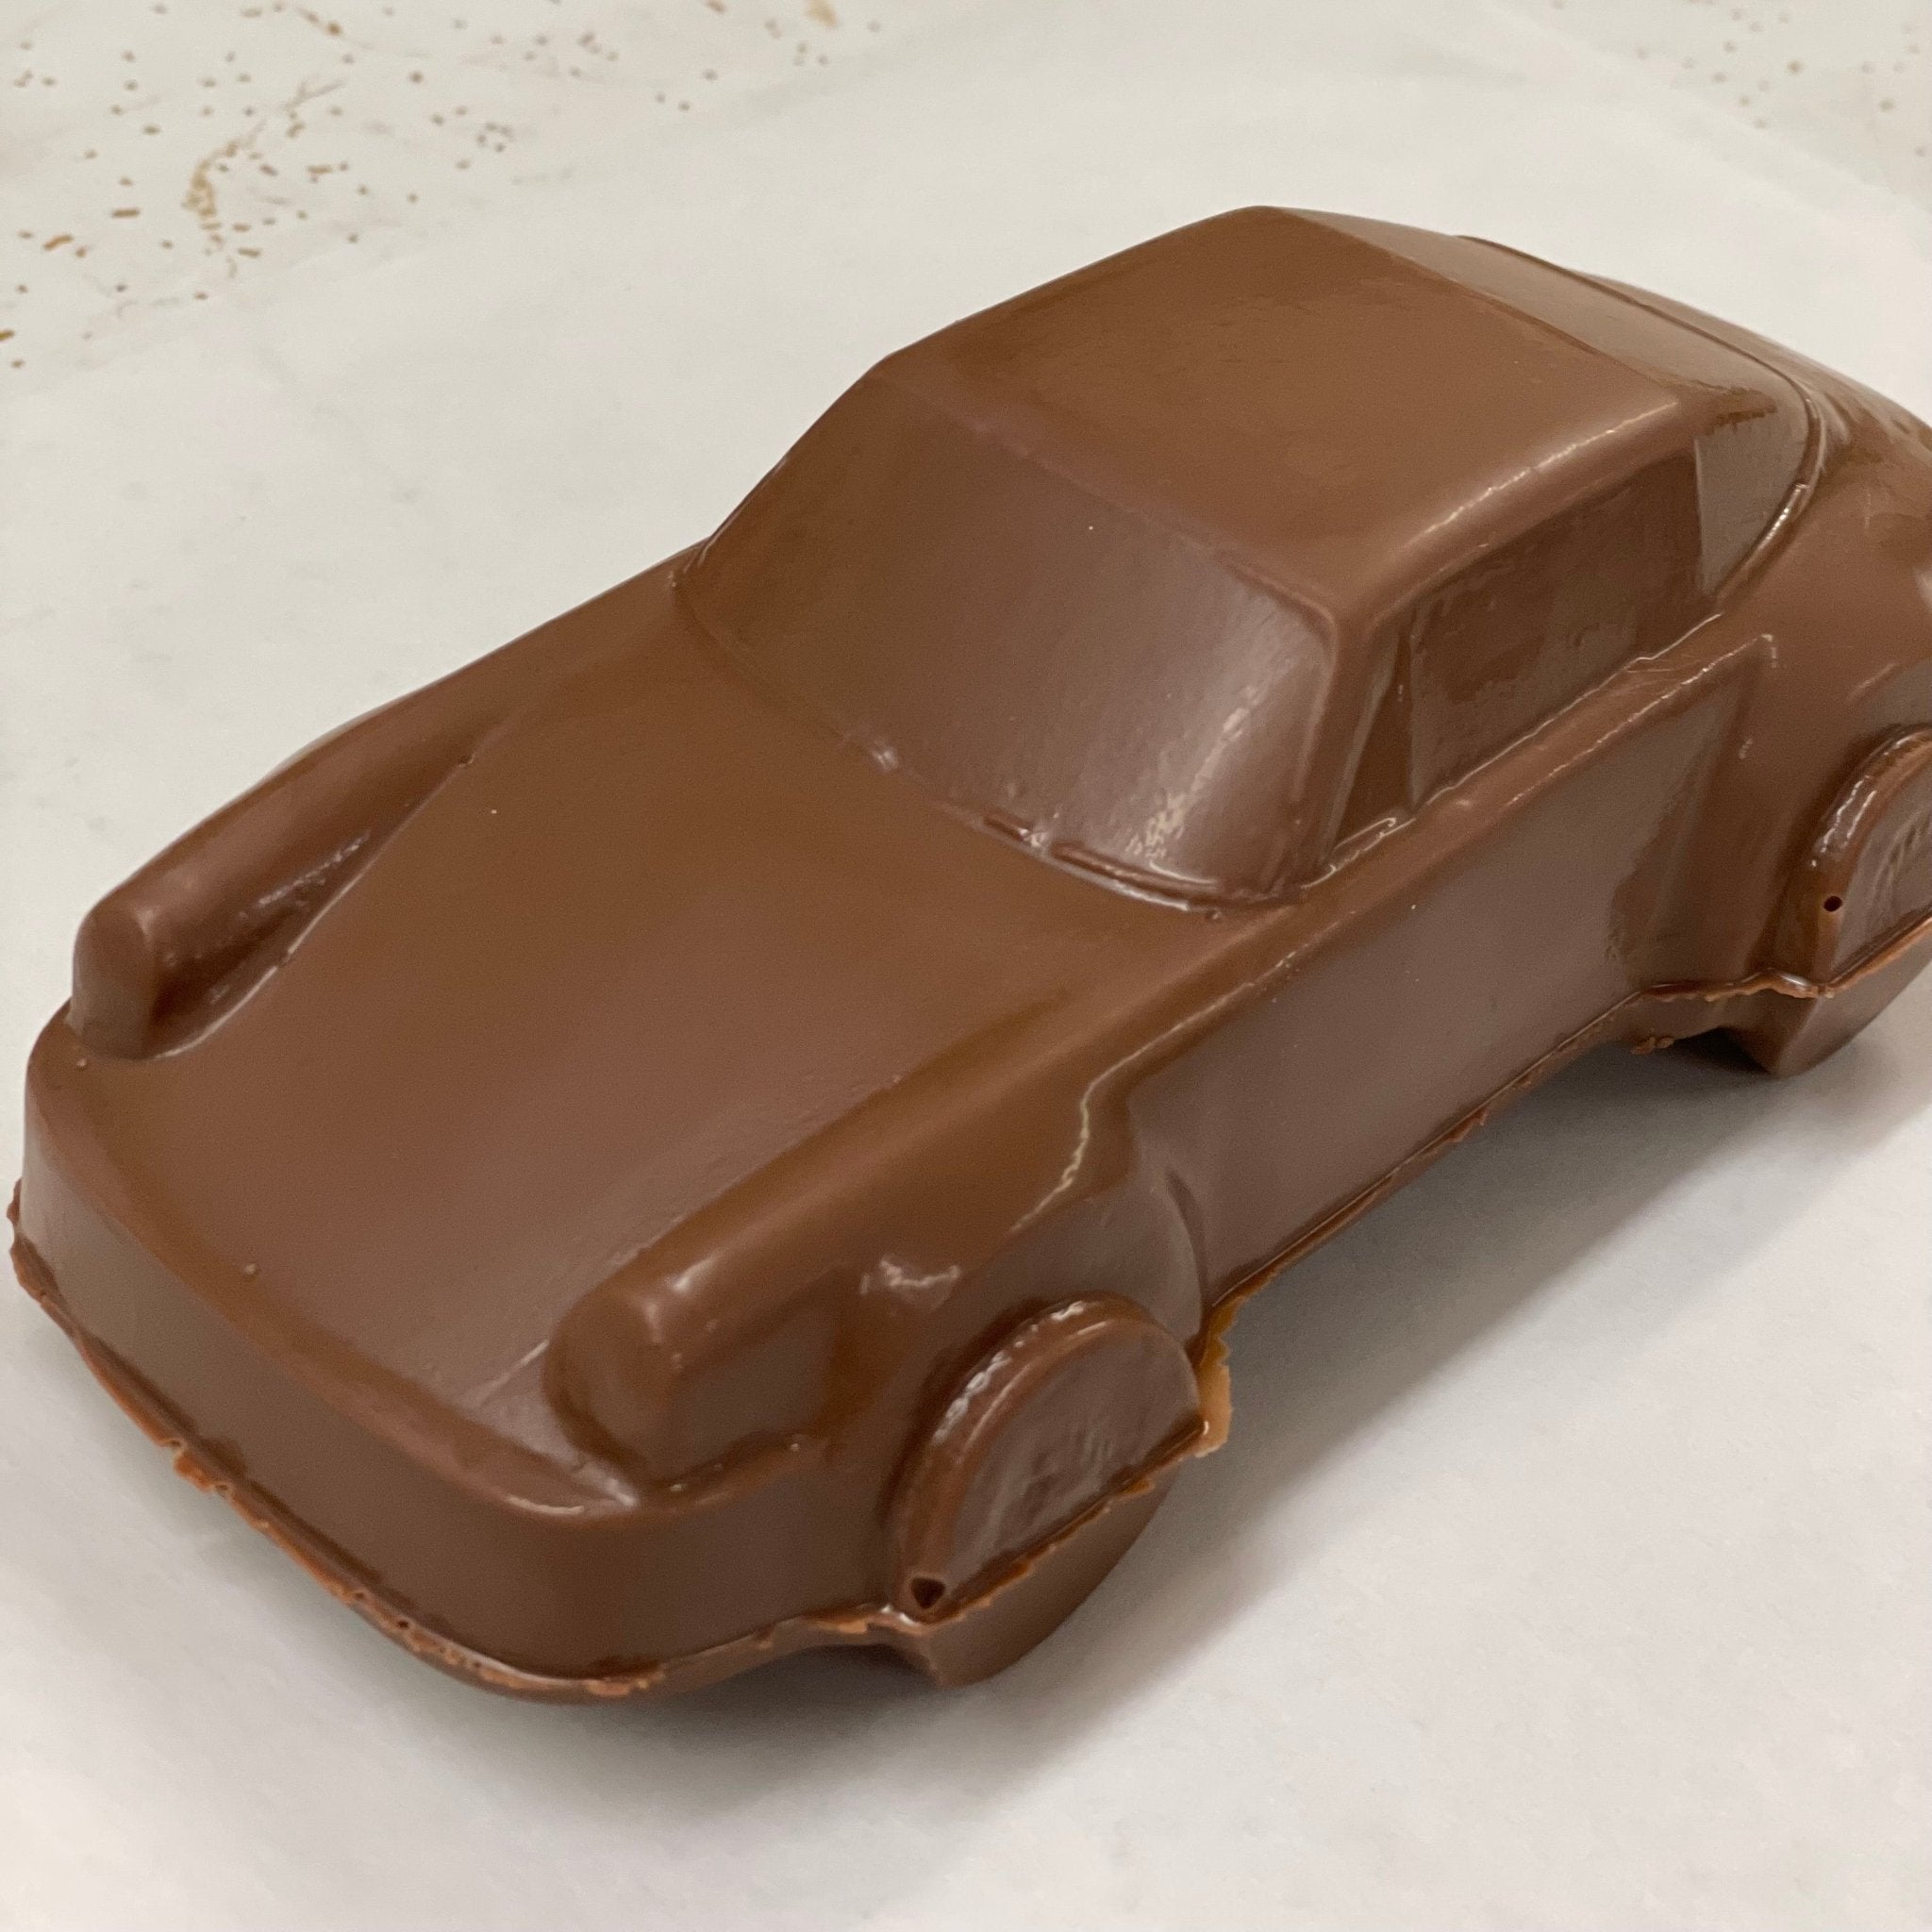 Chocolate Porsche - Nandy's CandyChocolate Porsche